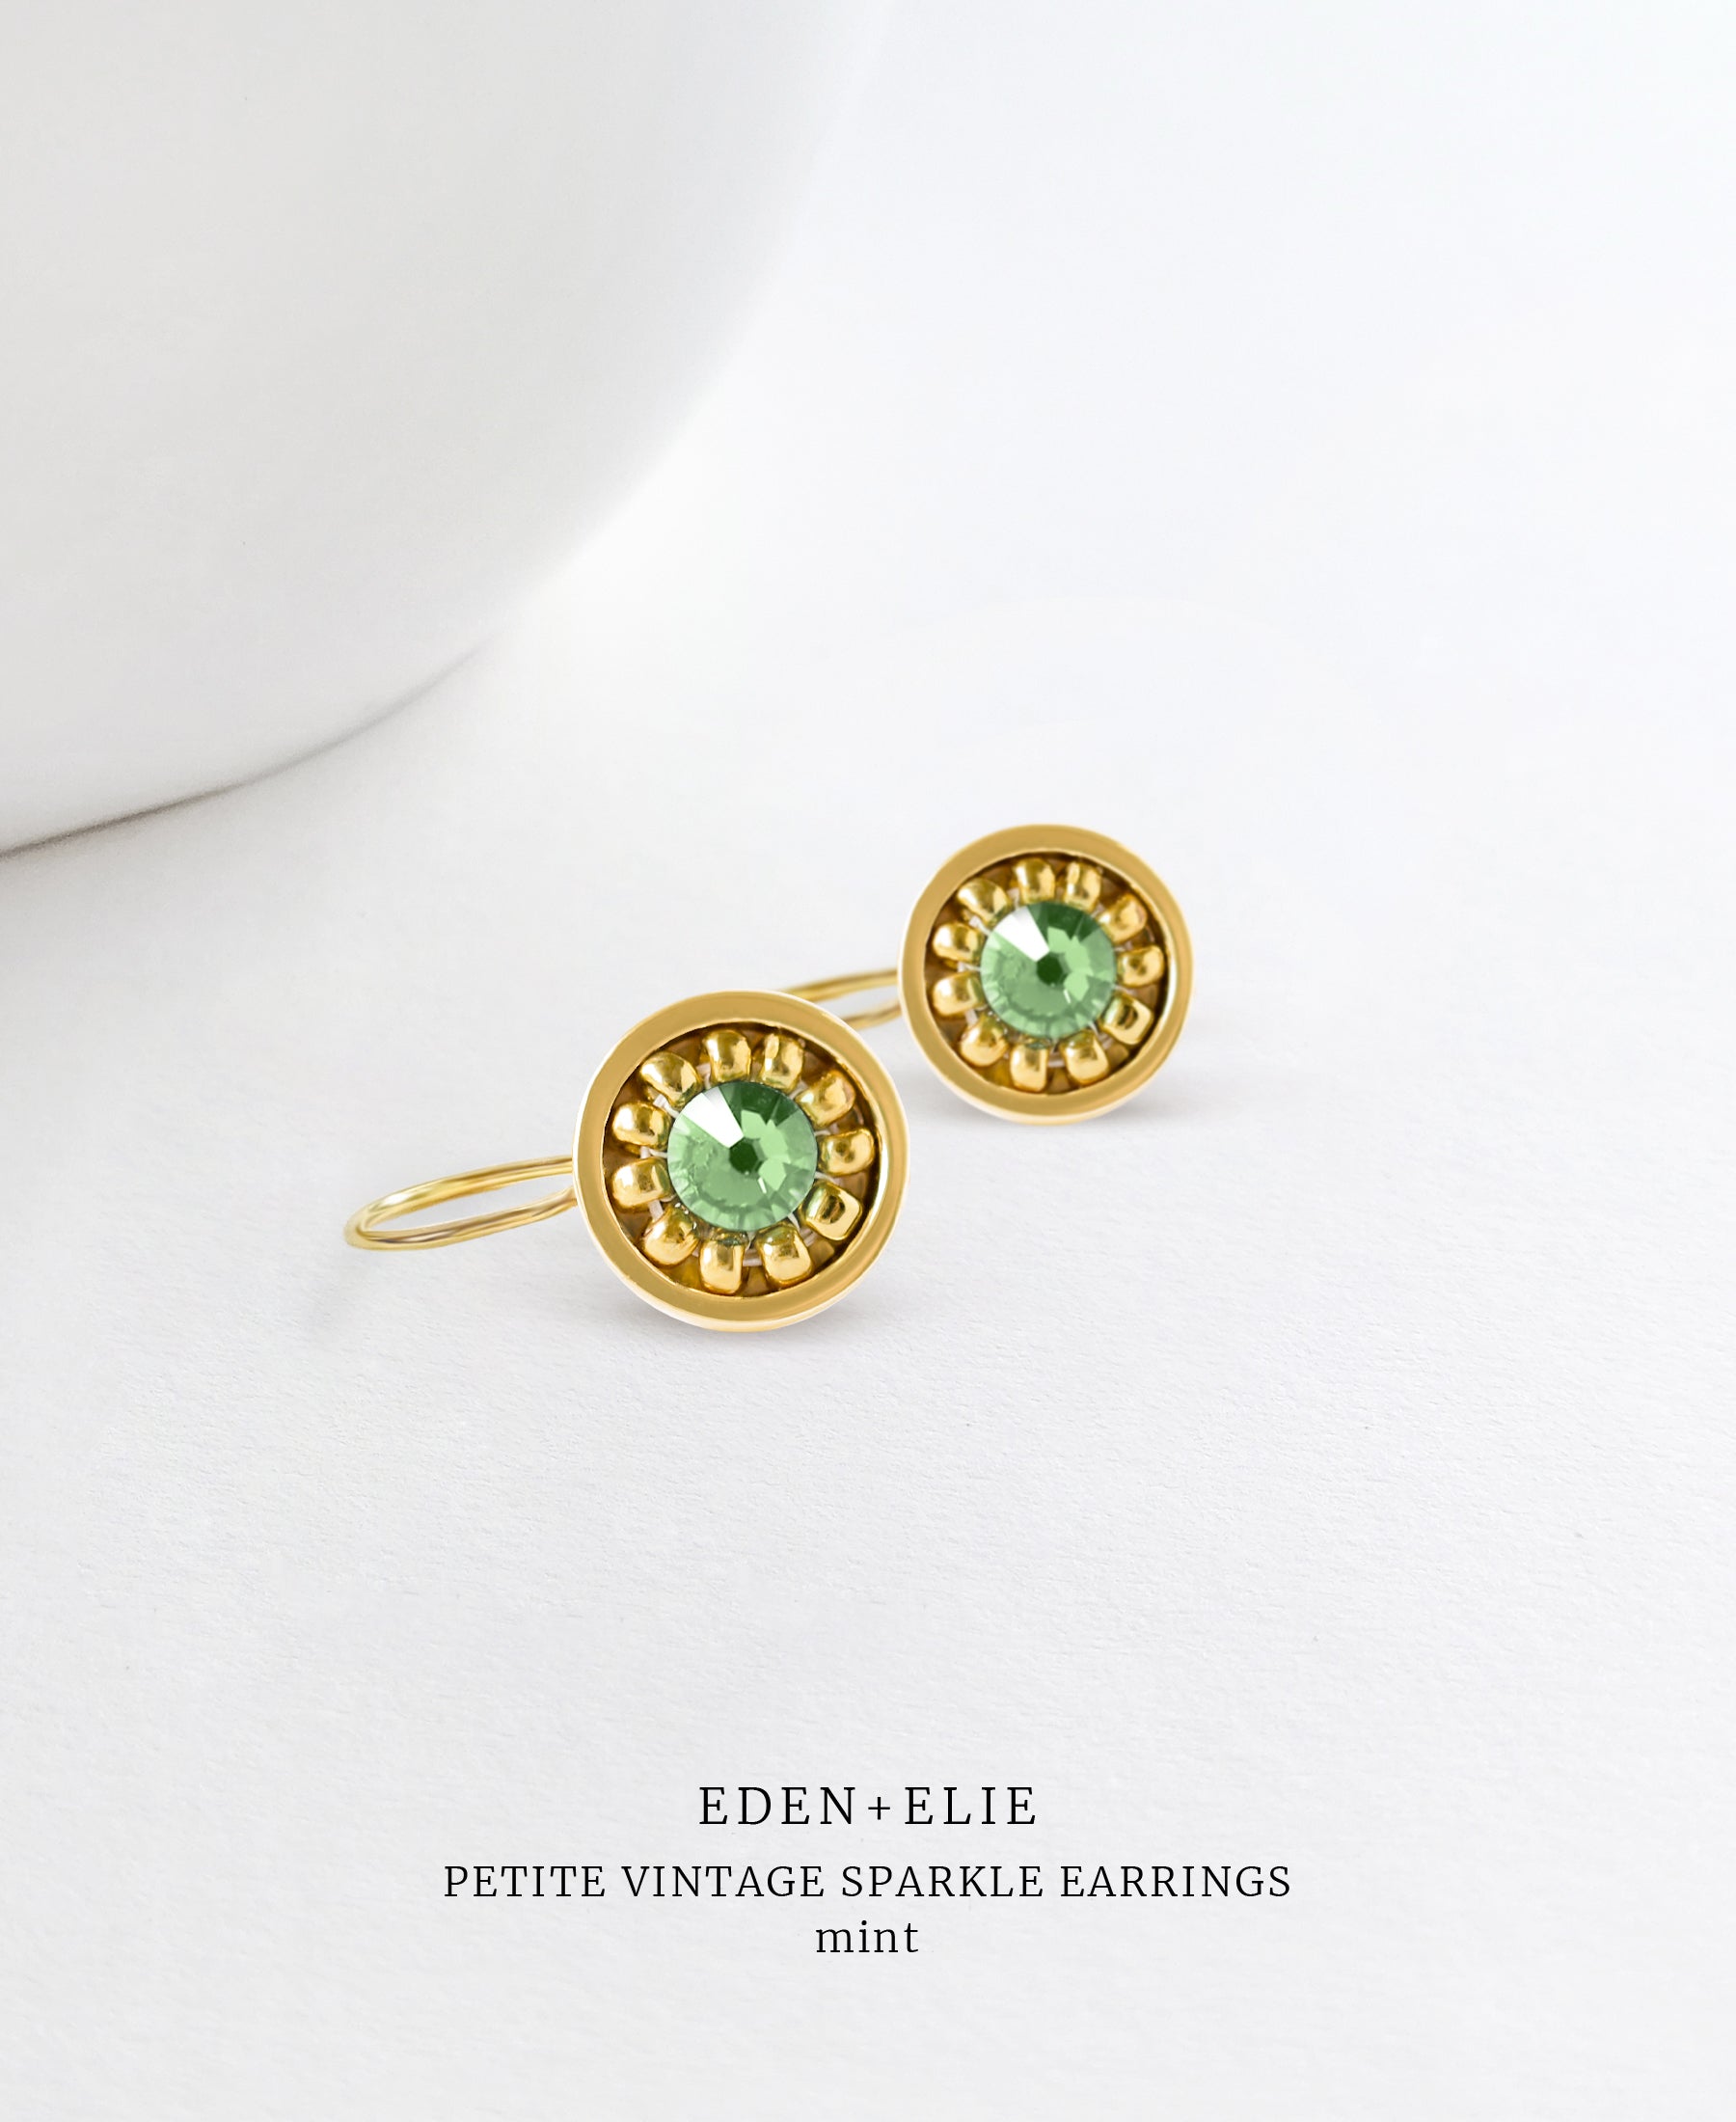 EDEN + ELIE Petite Vintage Sparkle drop earrings - Mint Green